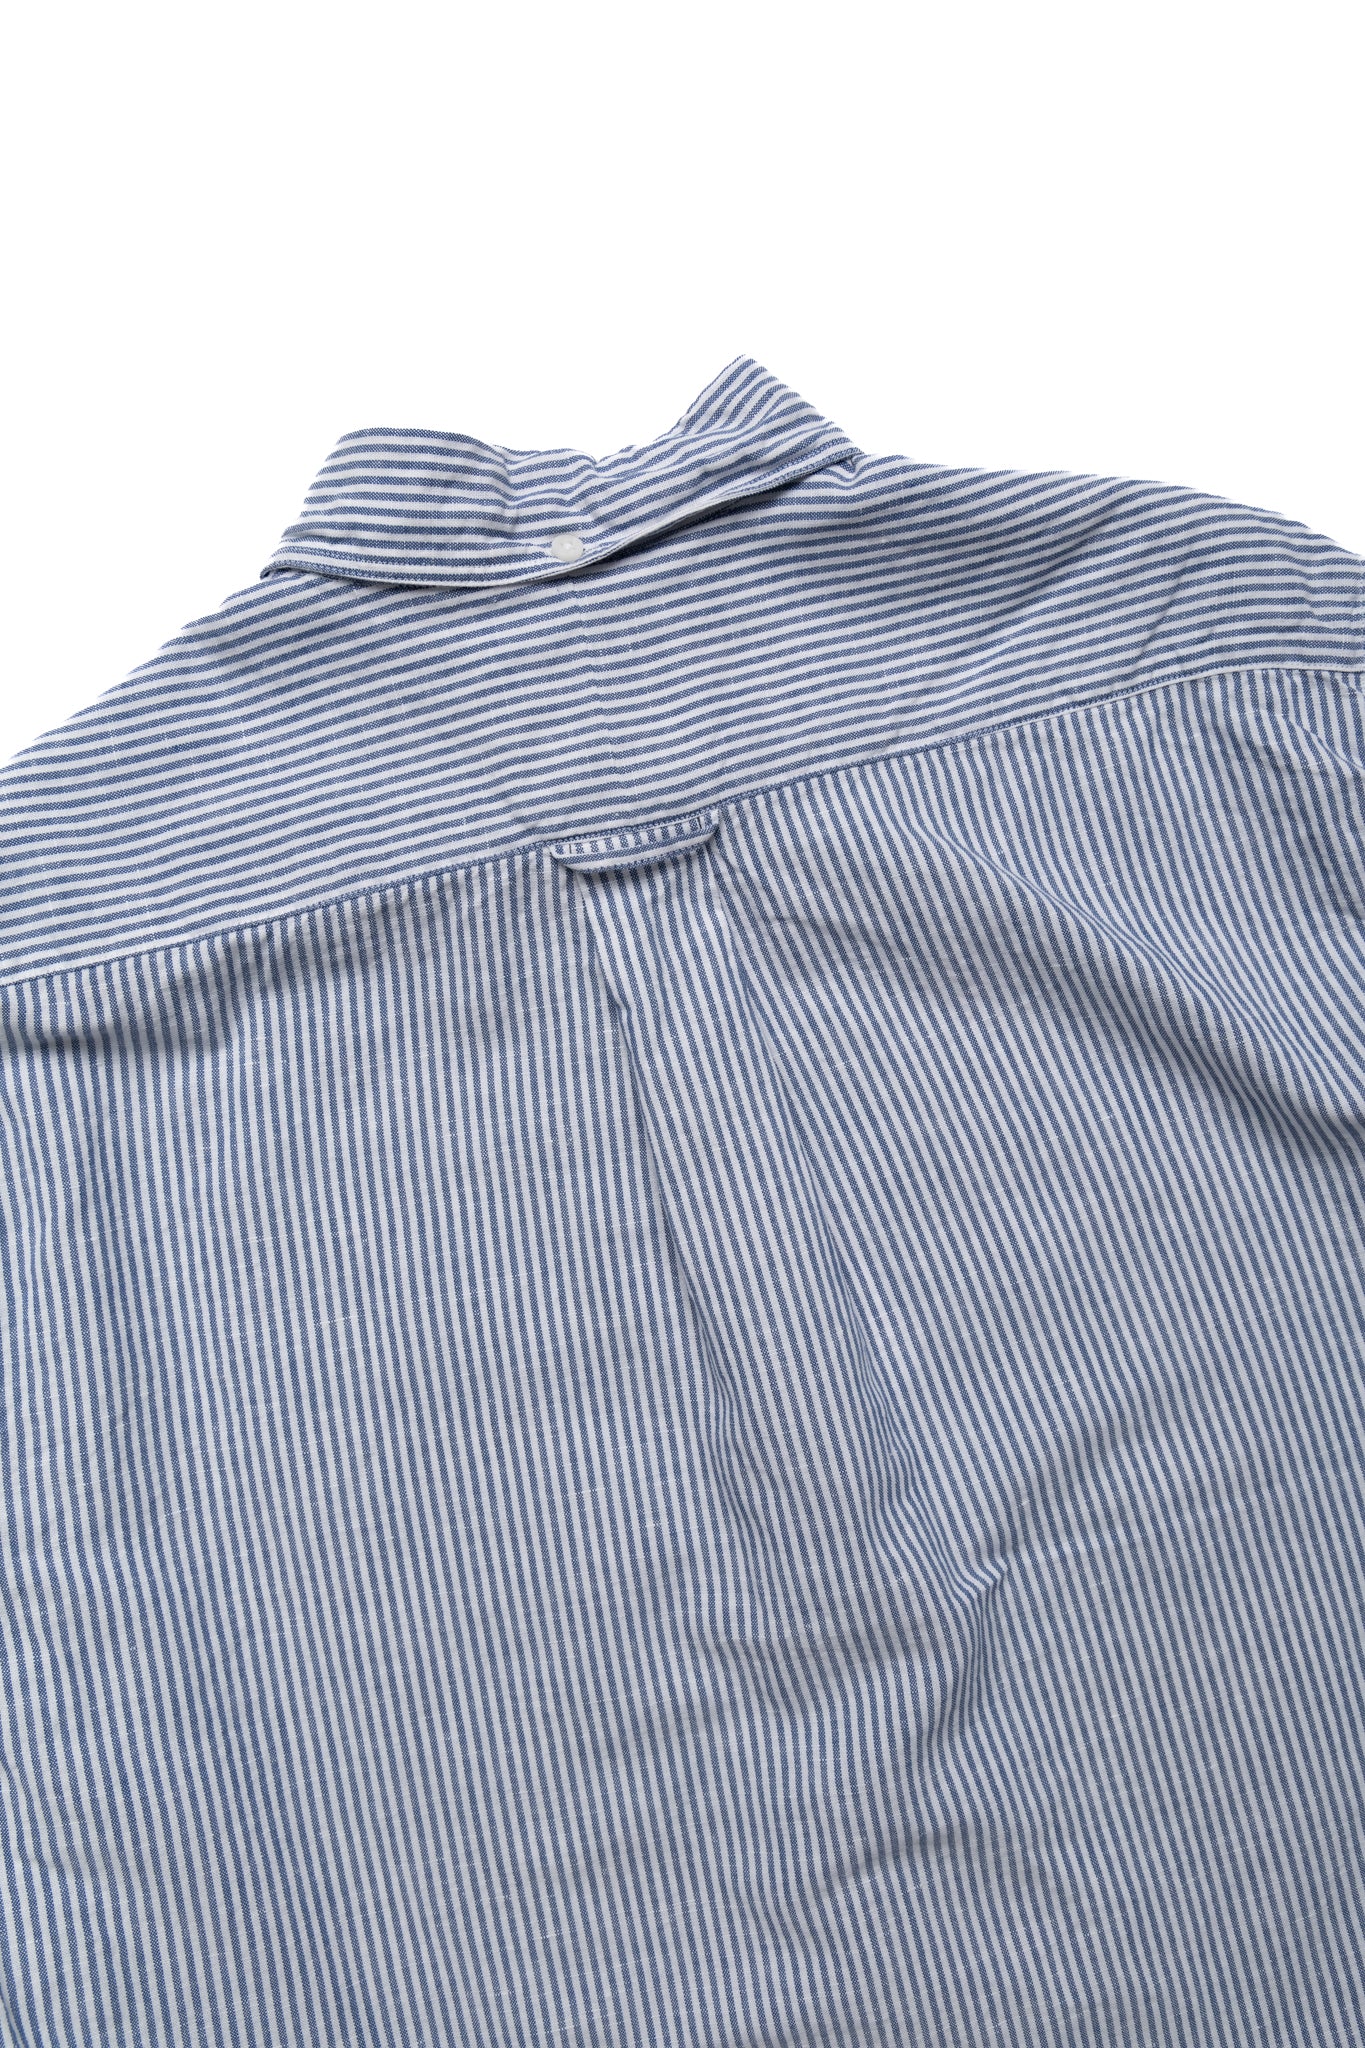 Vintage Button Down Shirt - Blue Stripe